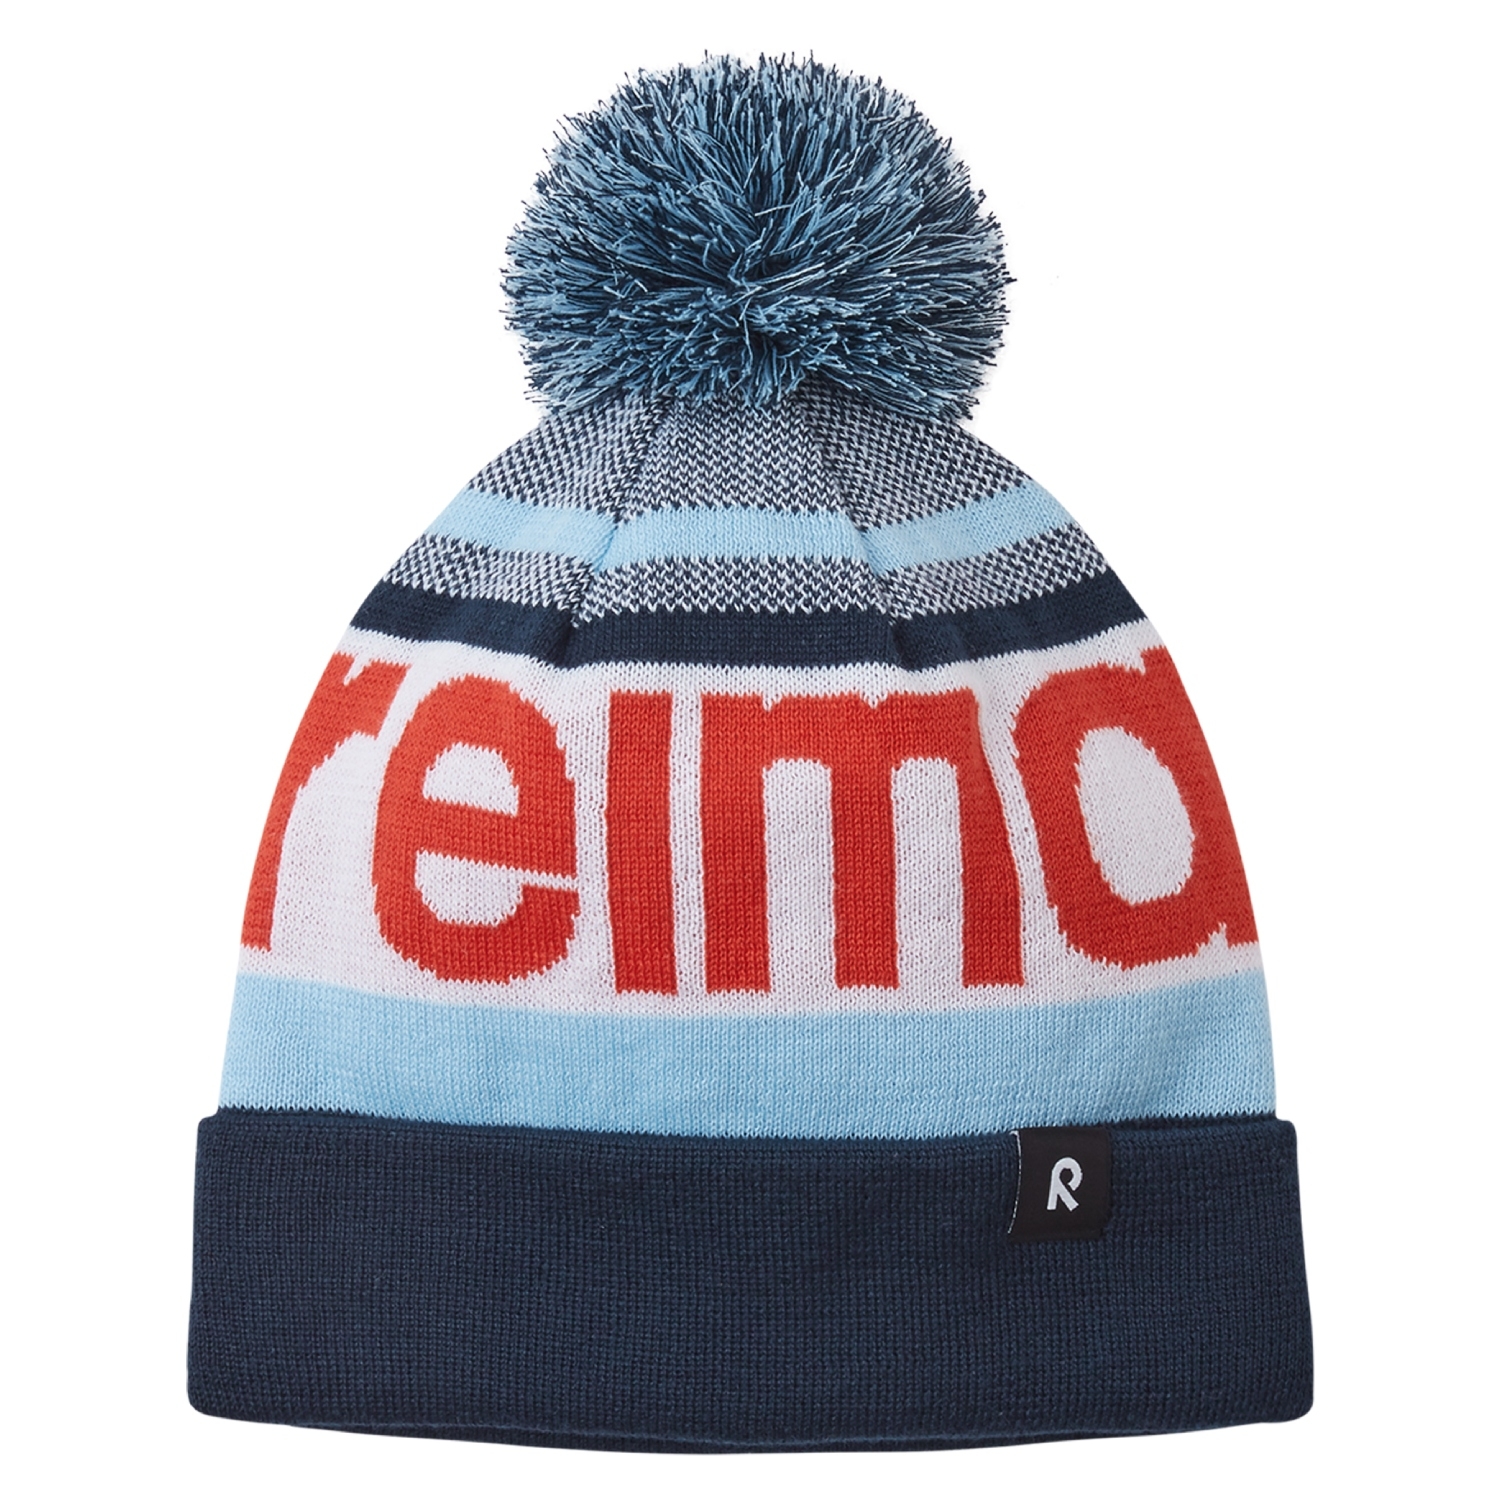 Dziecięca czapka zimowa Reima Taasko navy - 48/50 cm